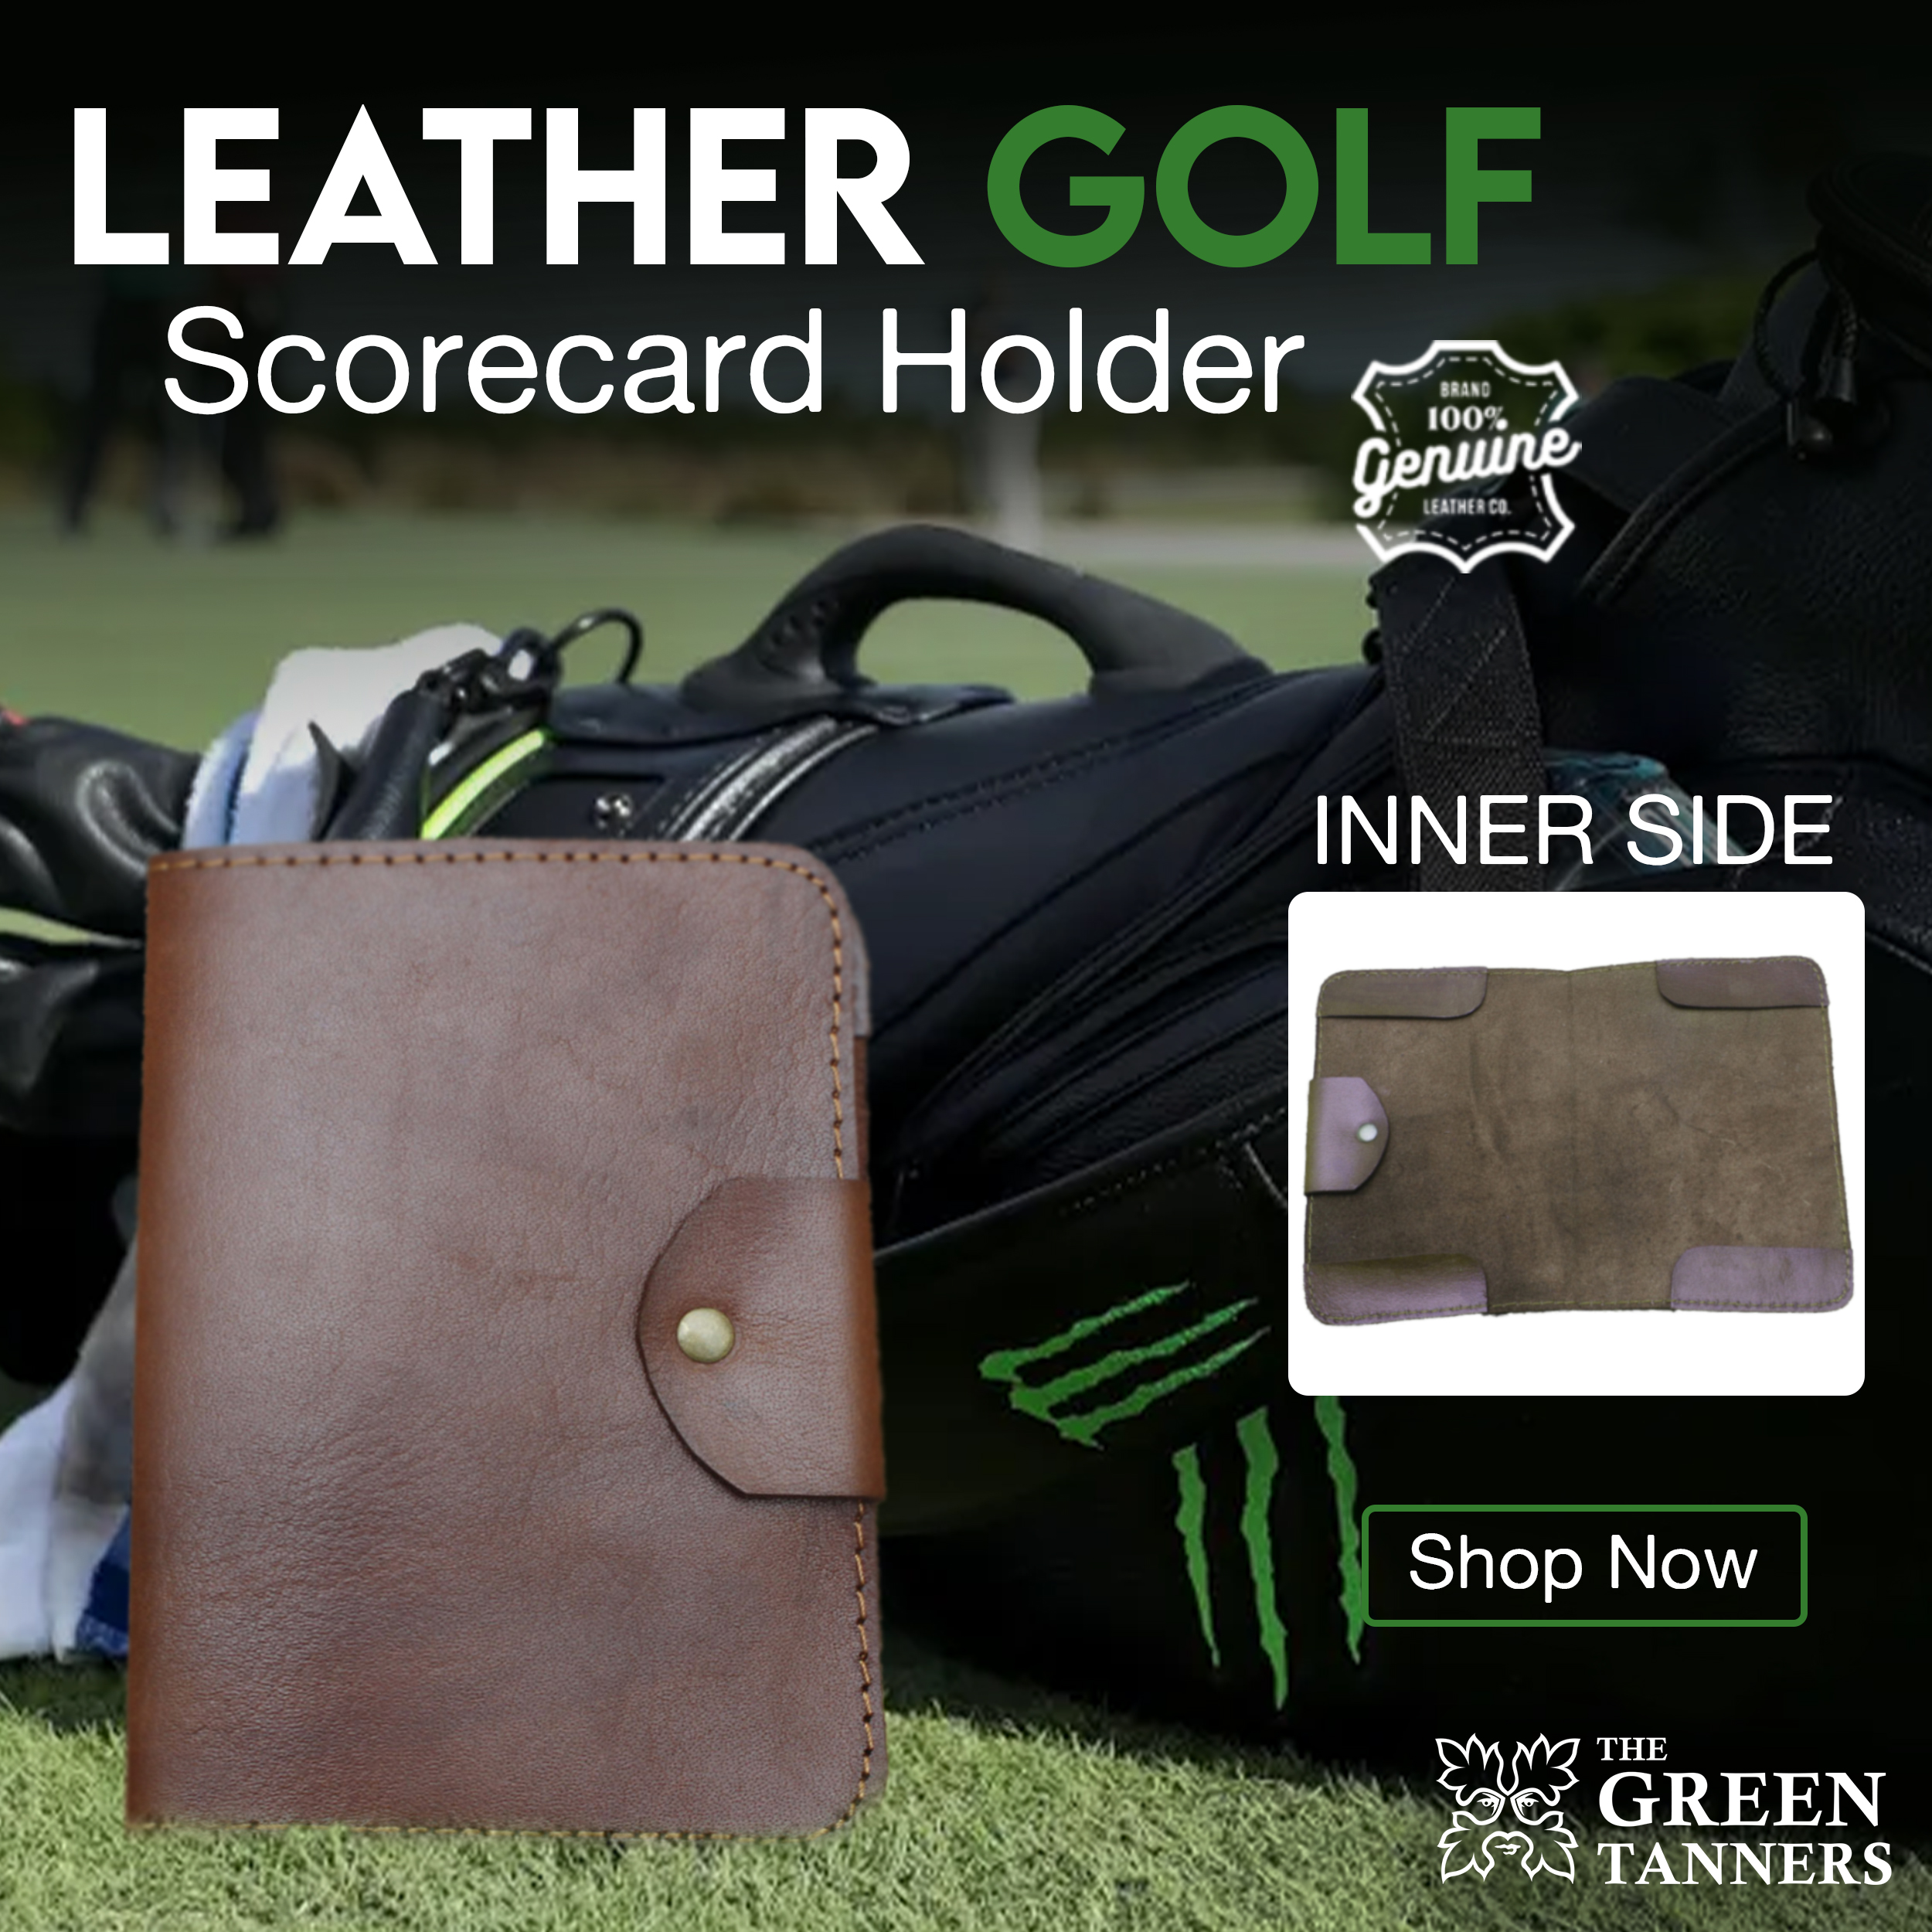 Golf Scorecard Holder, Leather Scorecard Holder